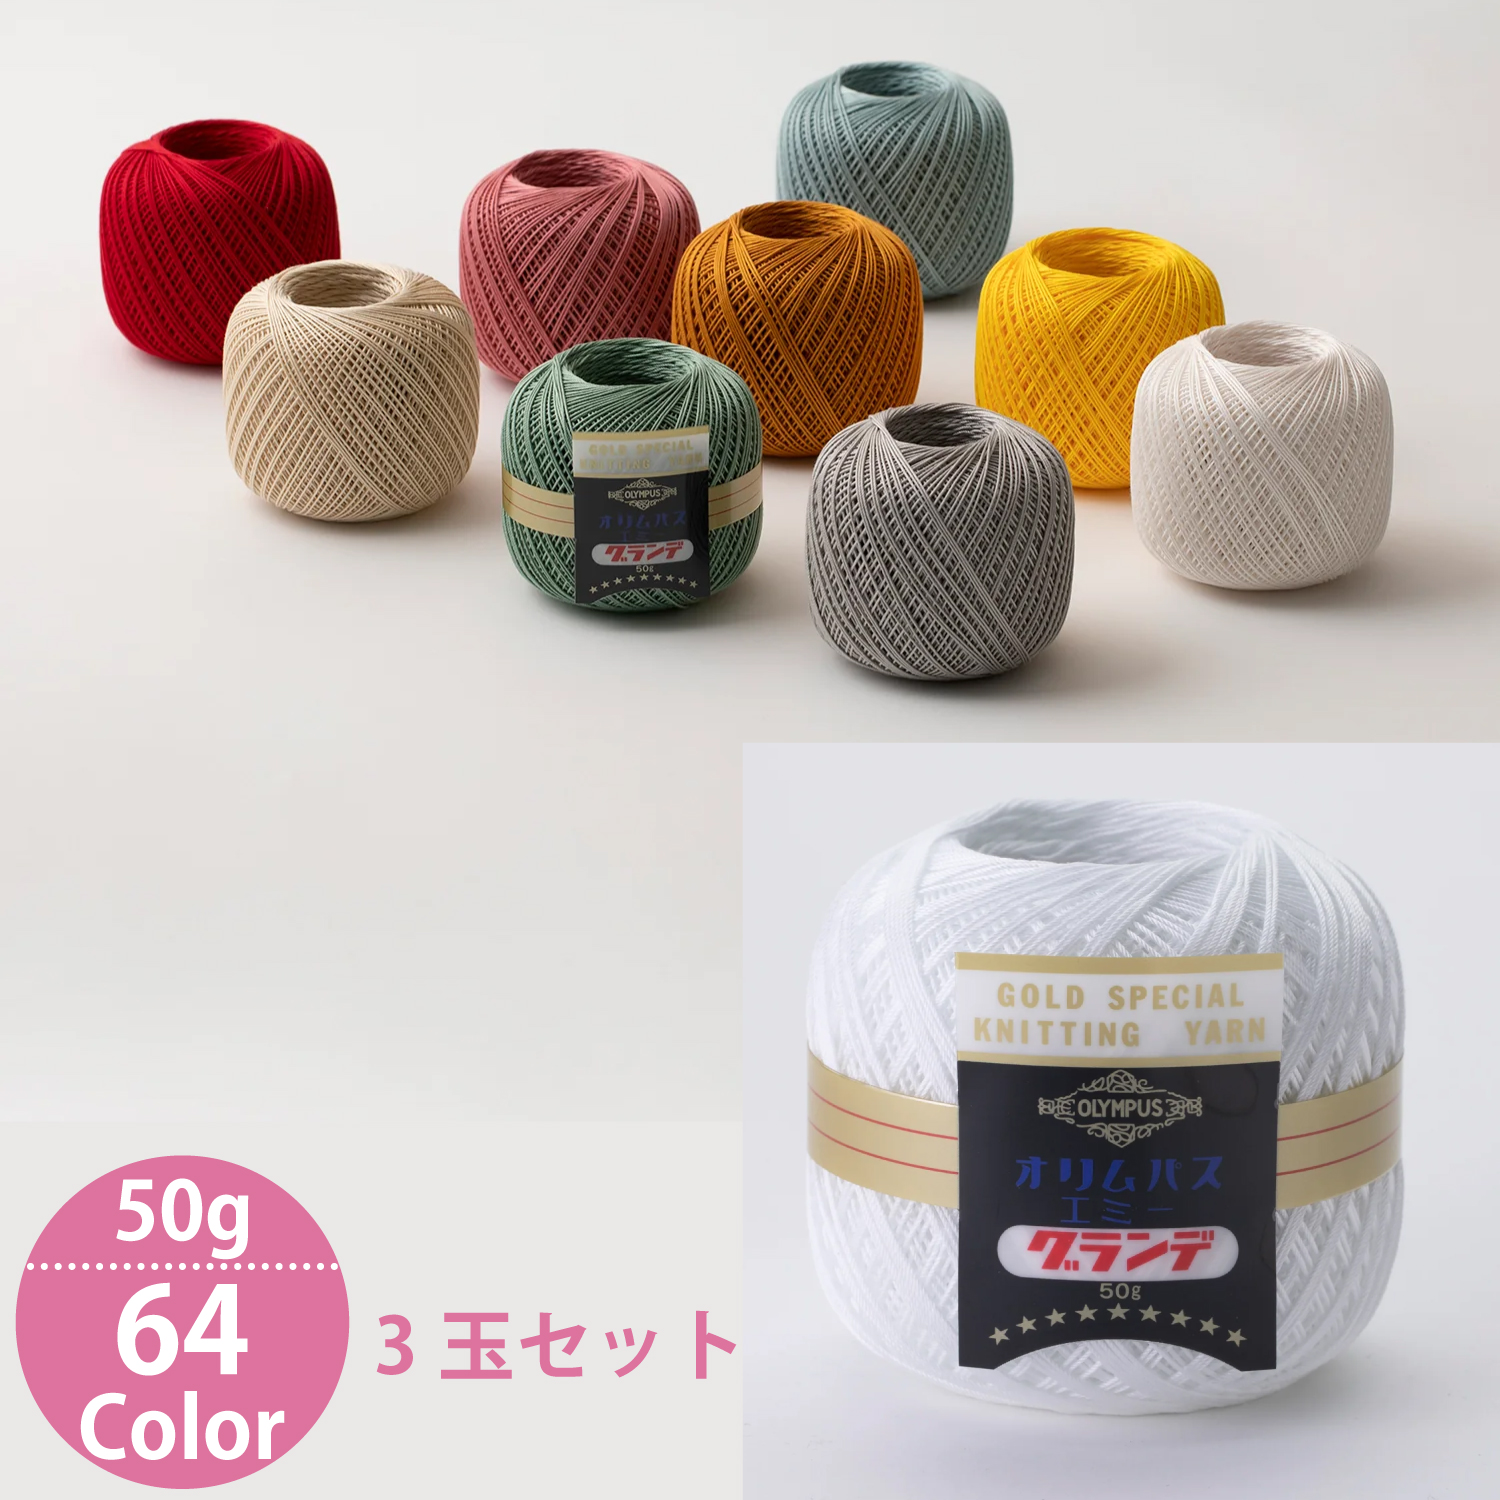 レース糸「手芸材料の卸売りサイトChuko Online」